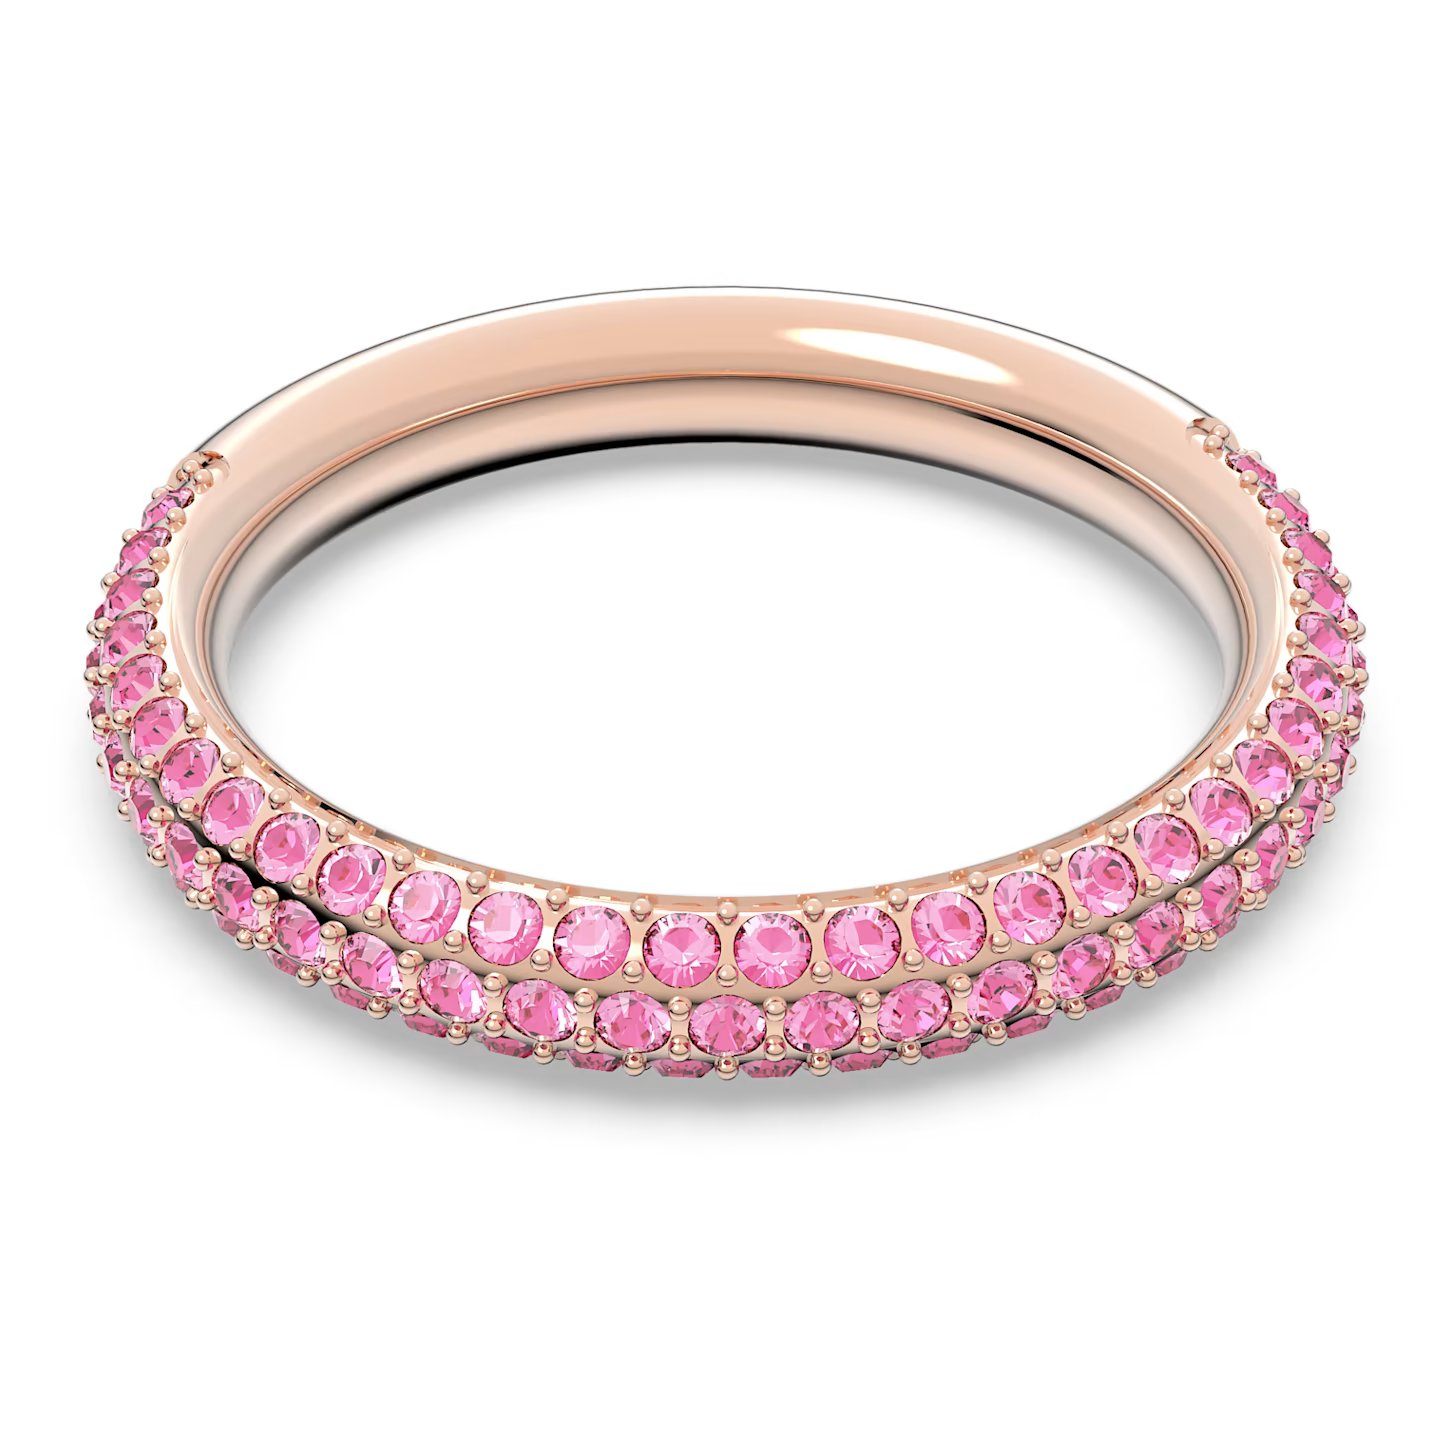 Swarovski Nádherný prsten s růžovými krystaly Swarovski Stone 5642910 52 mm